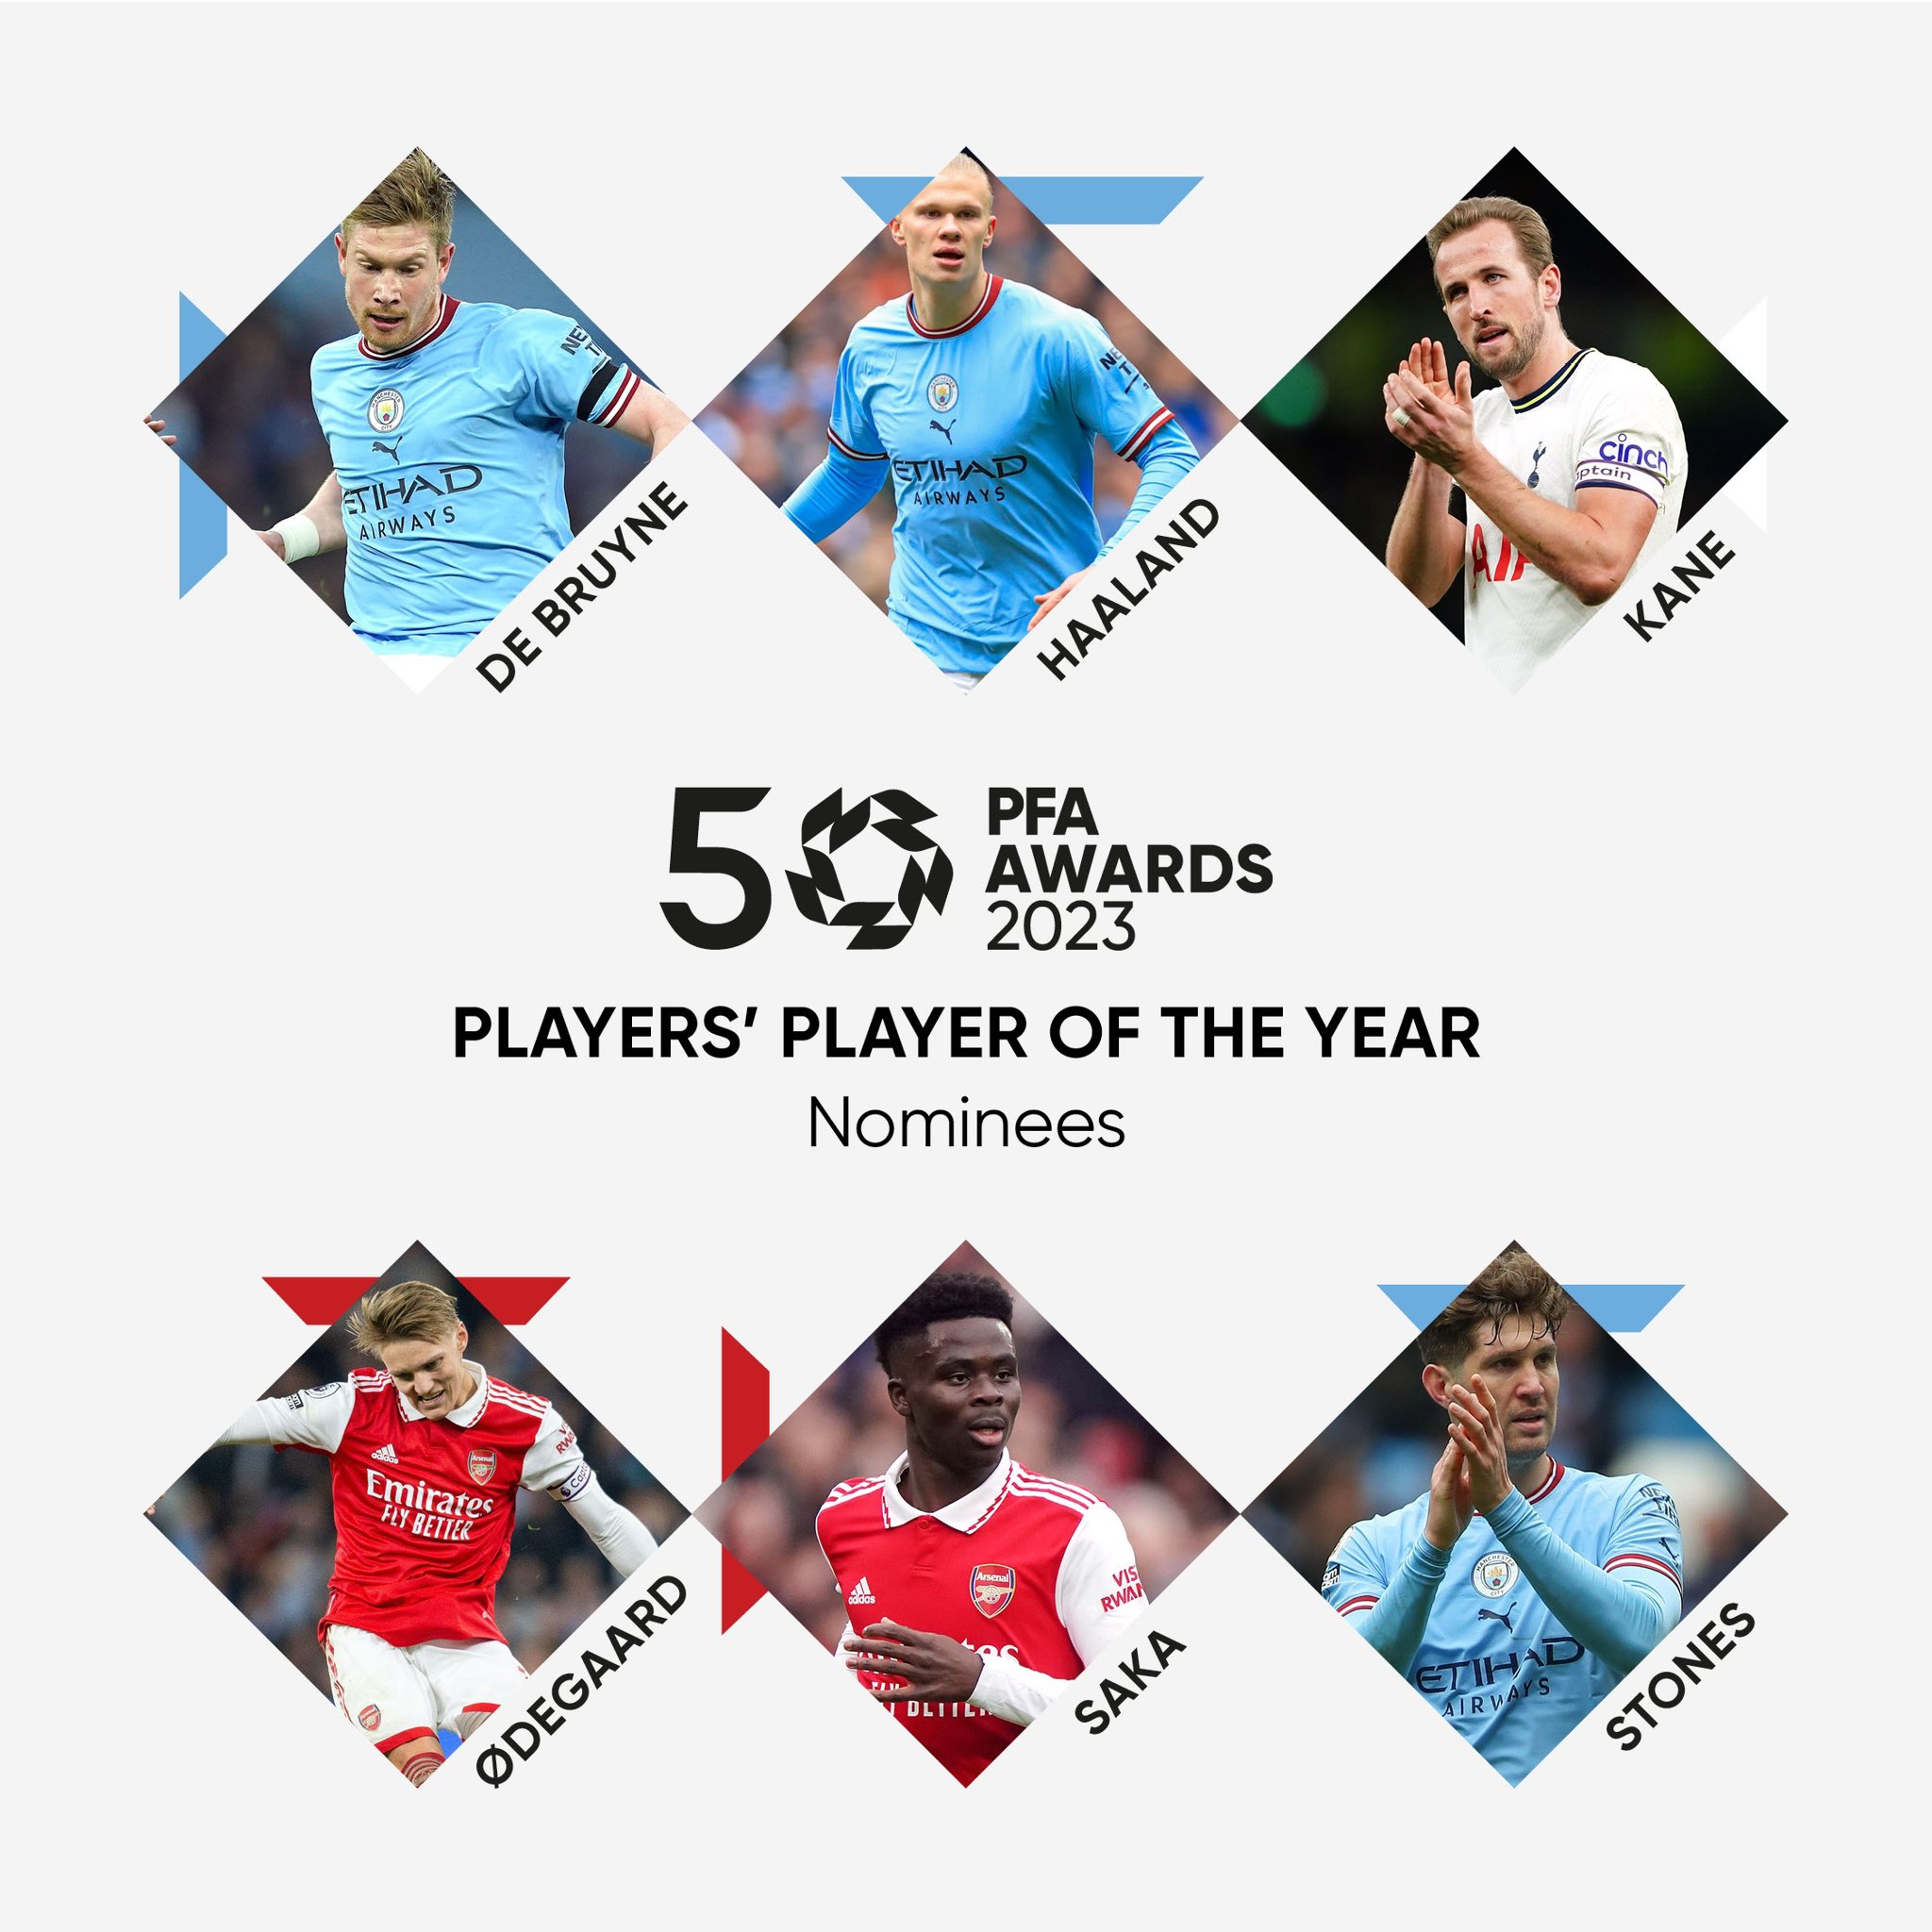 المرشحين الـ 6 للفوز بجائزة أفضل لاعب في الدوري الإنجليزي 2023